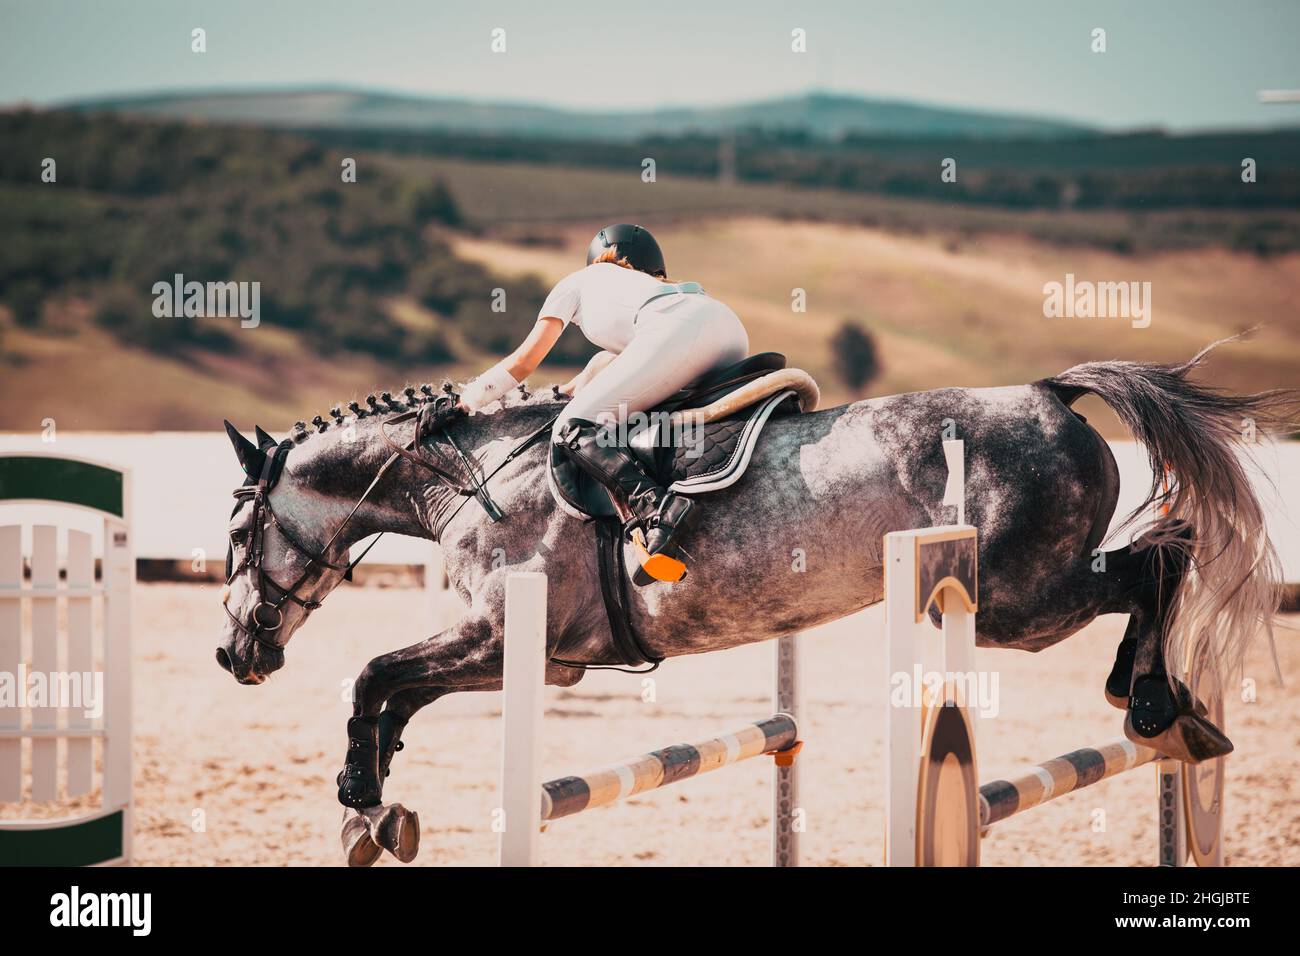 competidor y su caballo saltando en un concurso ecuestre Foto de stock